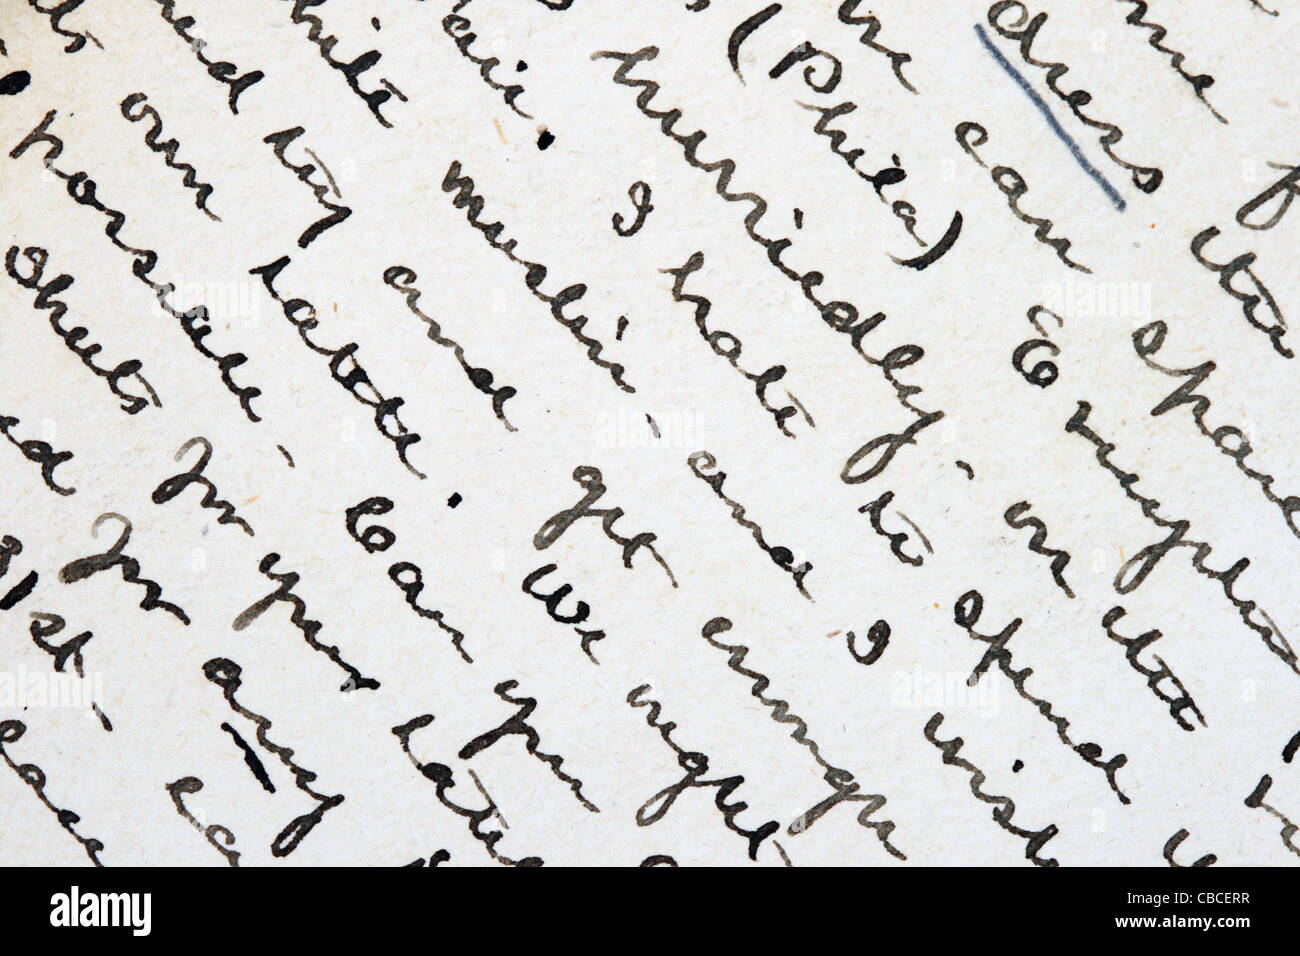 De Toluca à Lyon: Comprendre l'écriture française  Écrire en cursive,  Fonts de lettrage manuscrit, Cursive